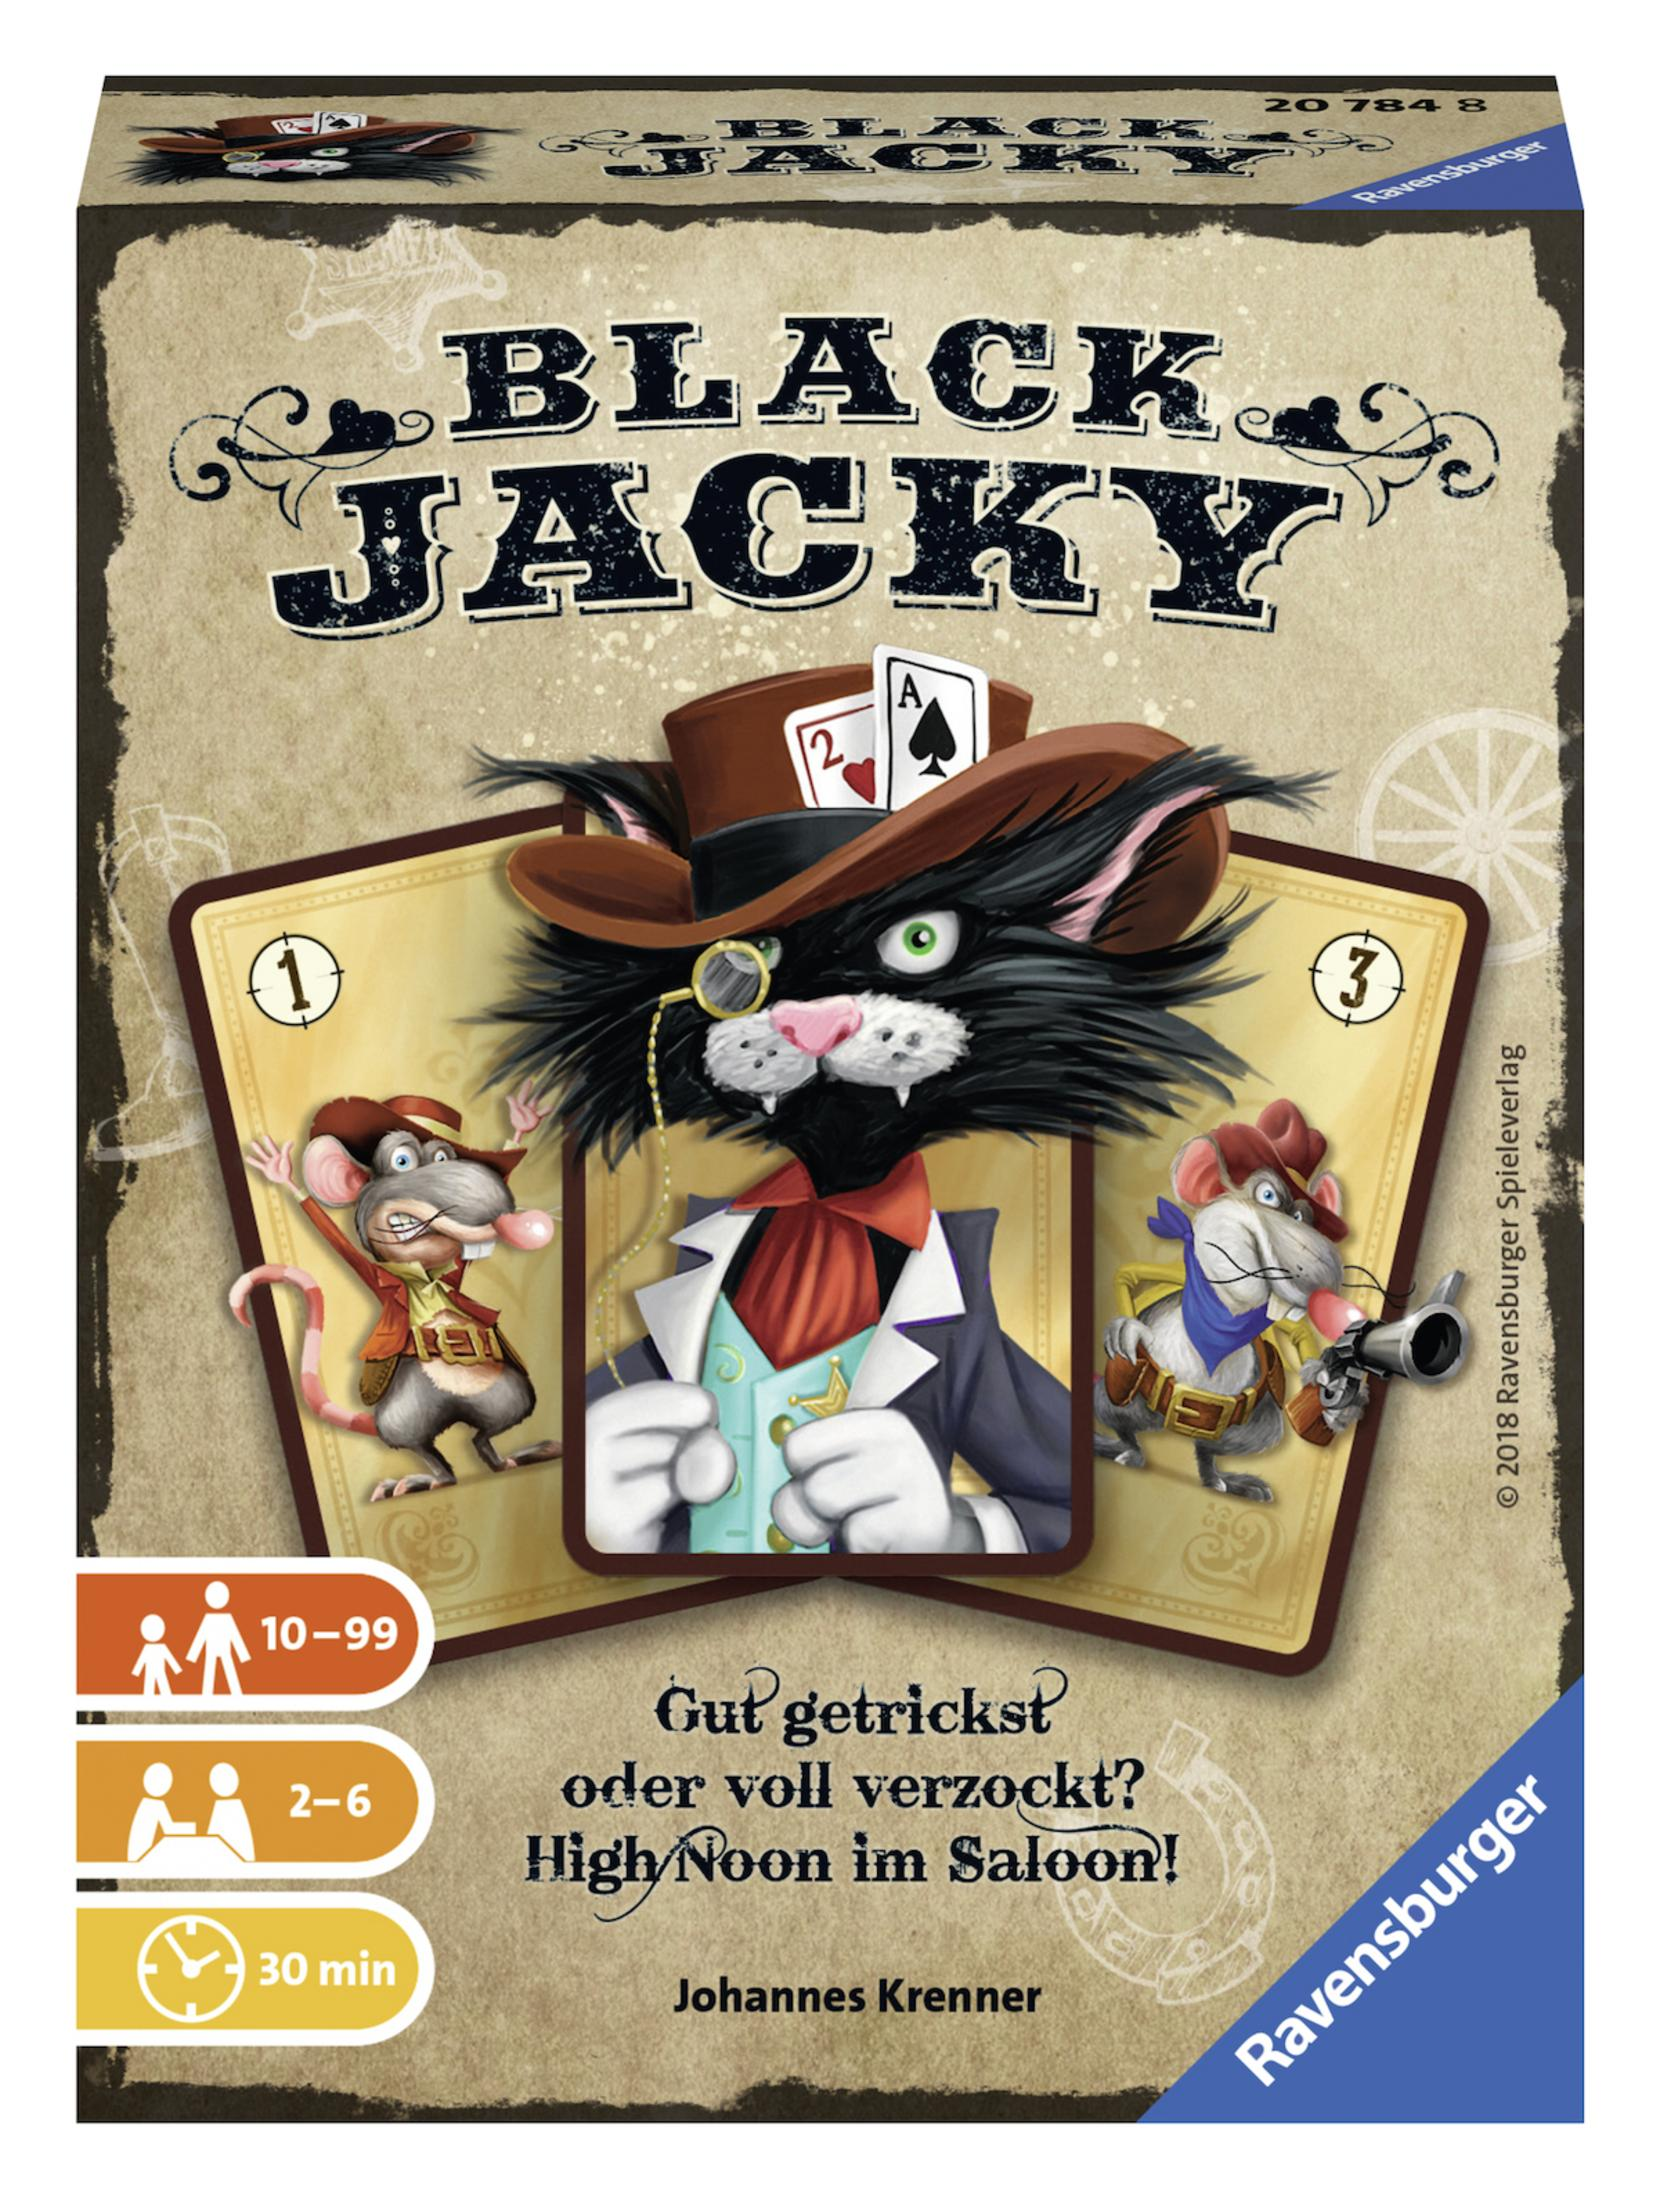 RAVENSBURGER 20784 BLACK JACKY Mehrfarbig Kartenspiel